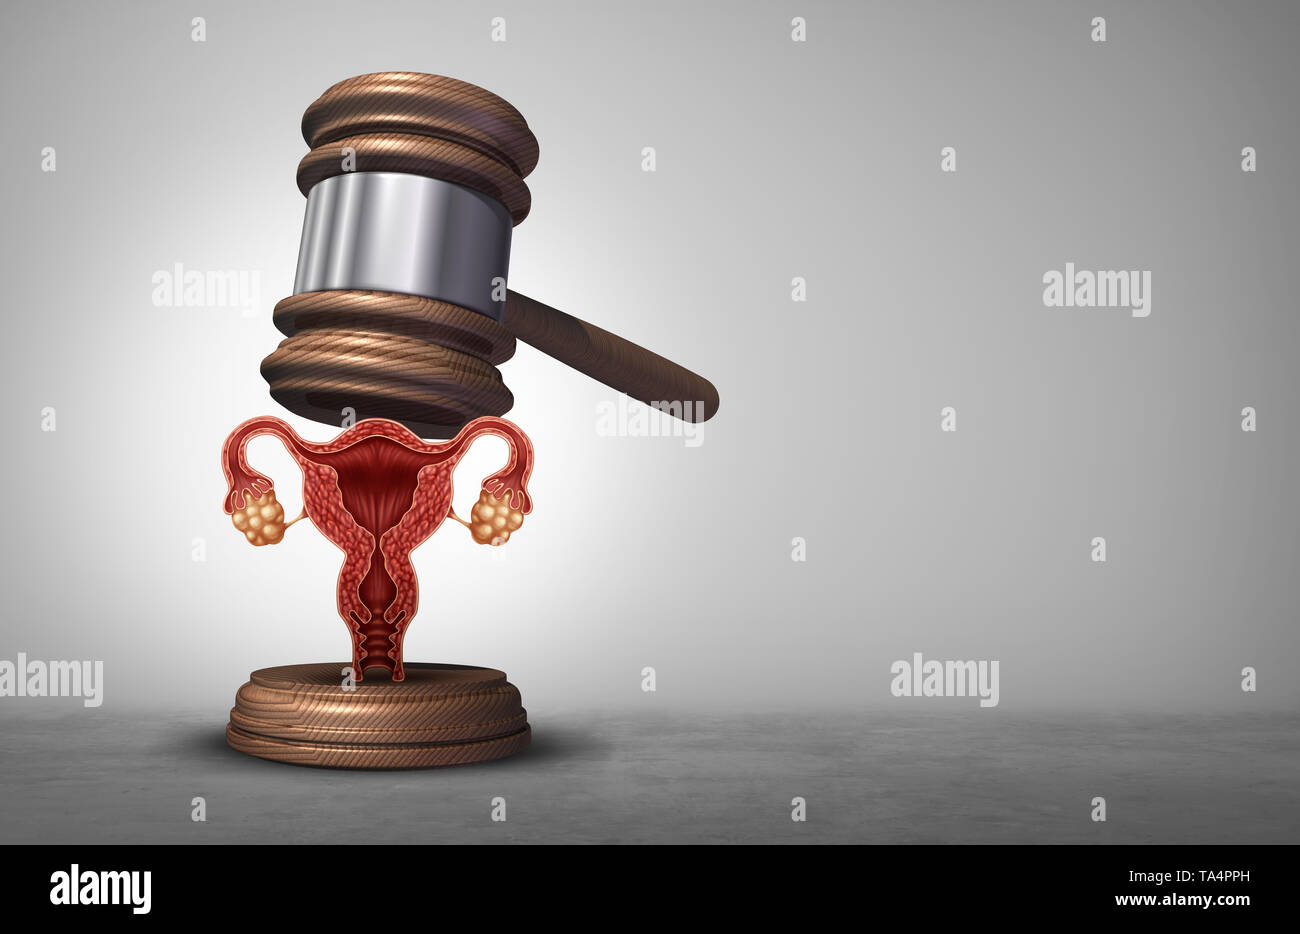 Die reproduktiven Rechte und Abtreibung Gesetz oder Frauen Gesundheit Justiz als juristischen Begriff für die Reproduktion Politik als Rechtsvorschriften durch die Regierung. Stockfoto